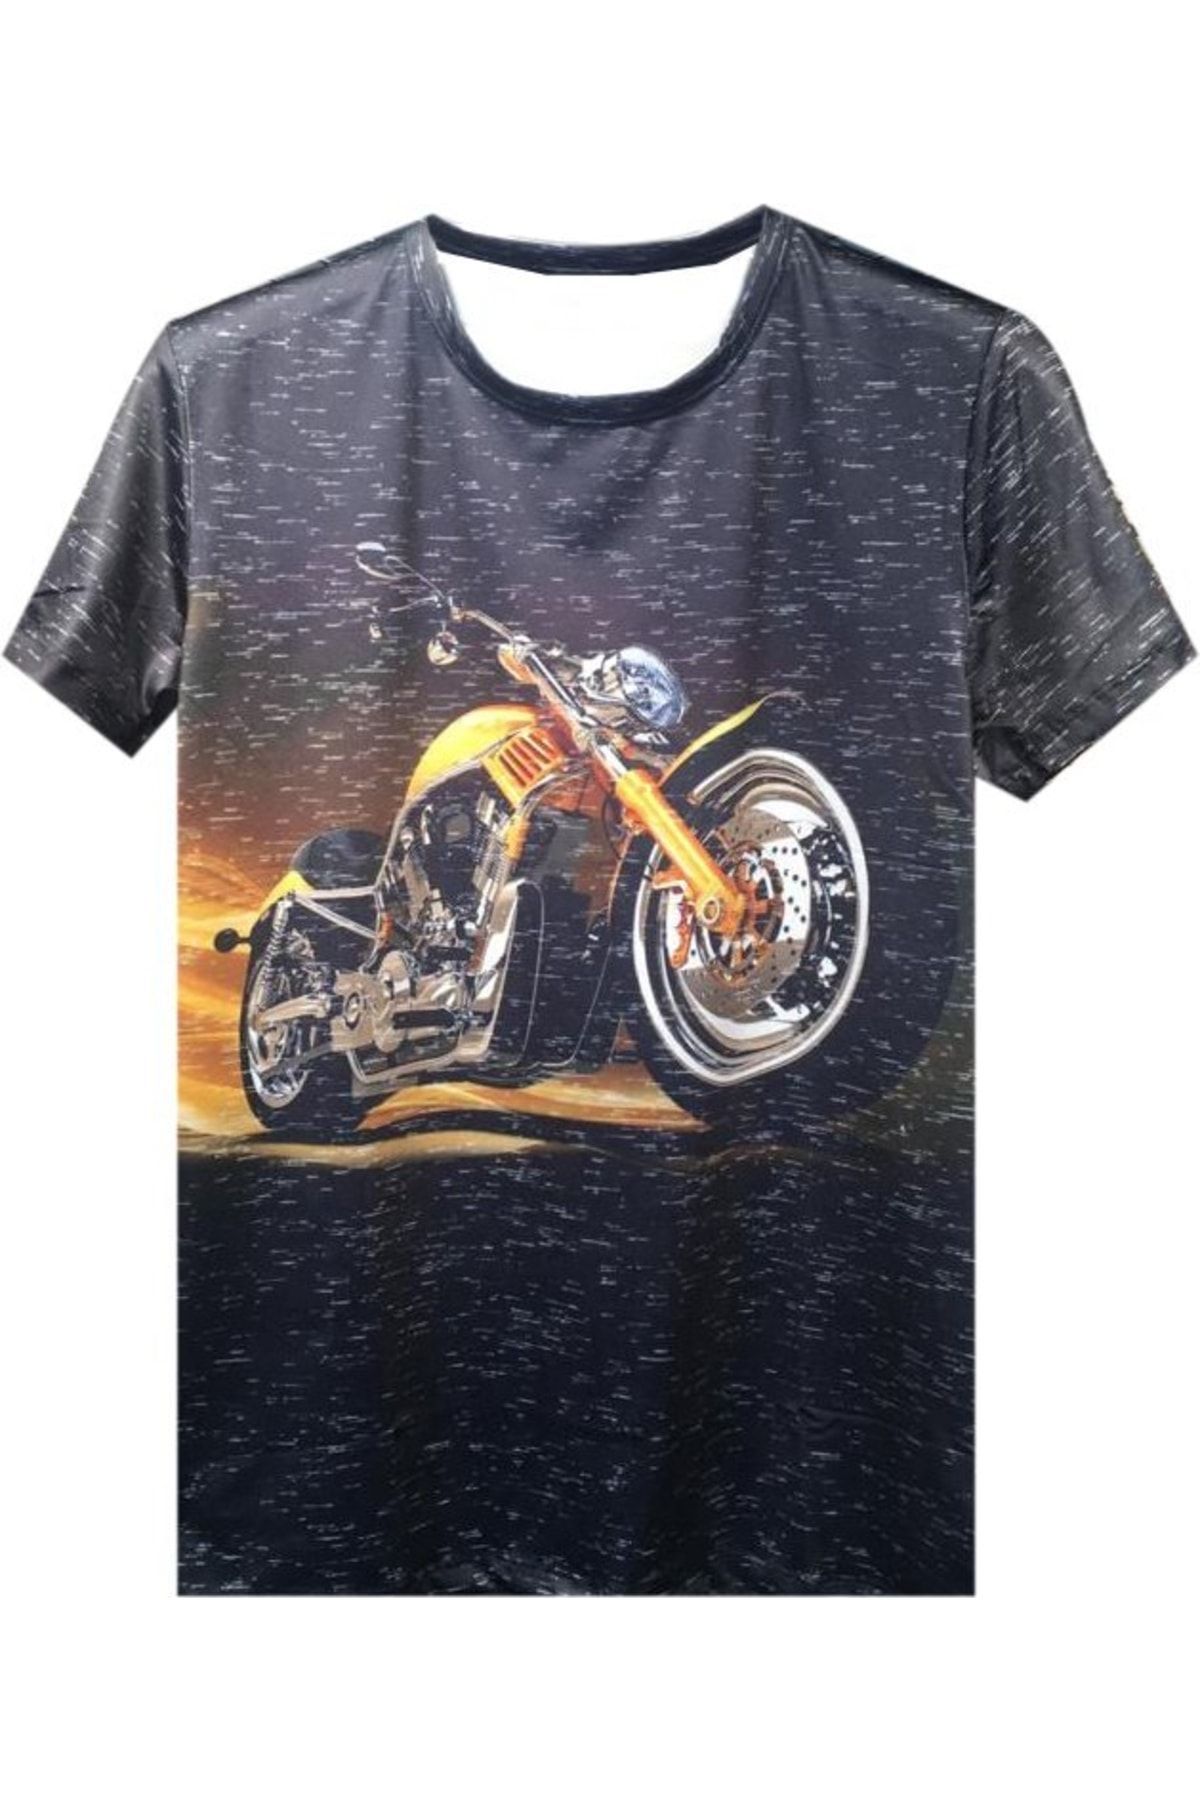 Prosev Chopper Motosiklet Erkek T-shirt Füme